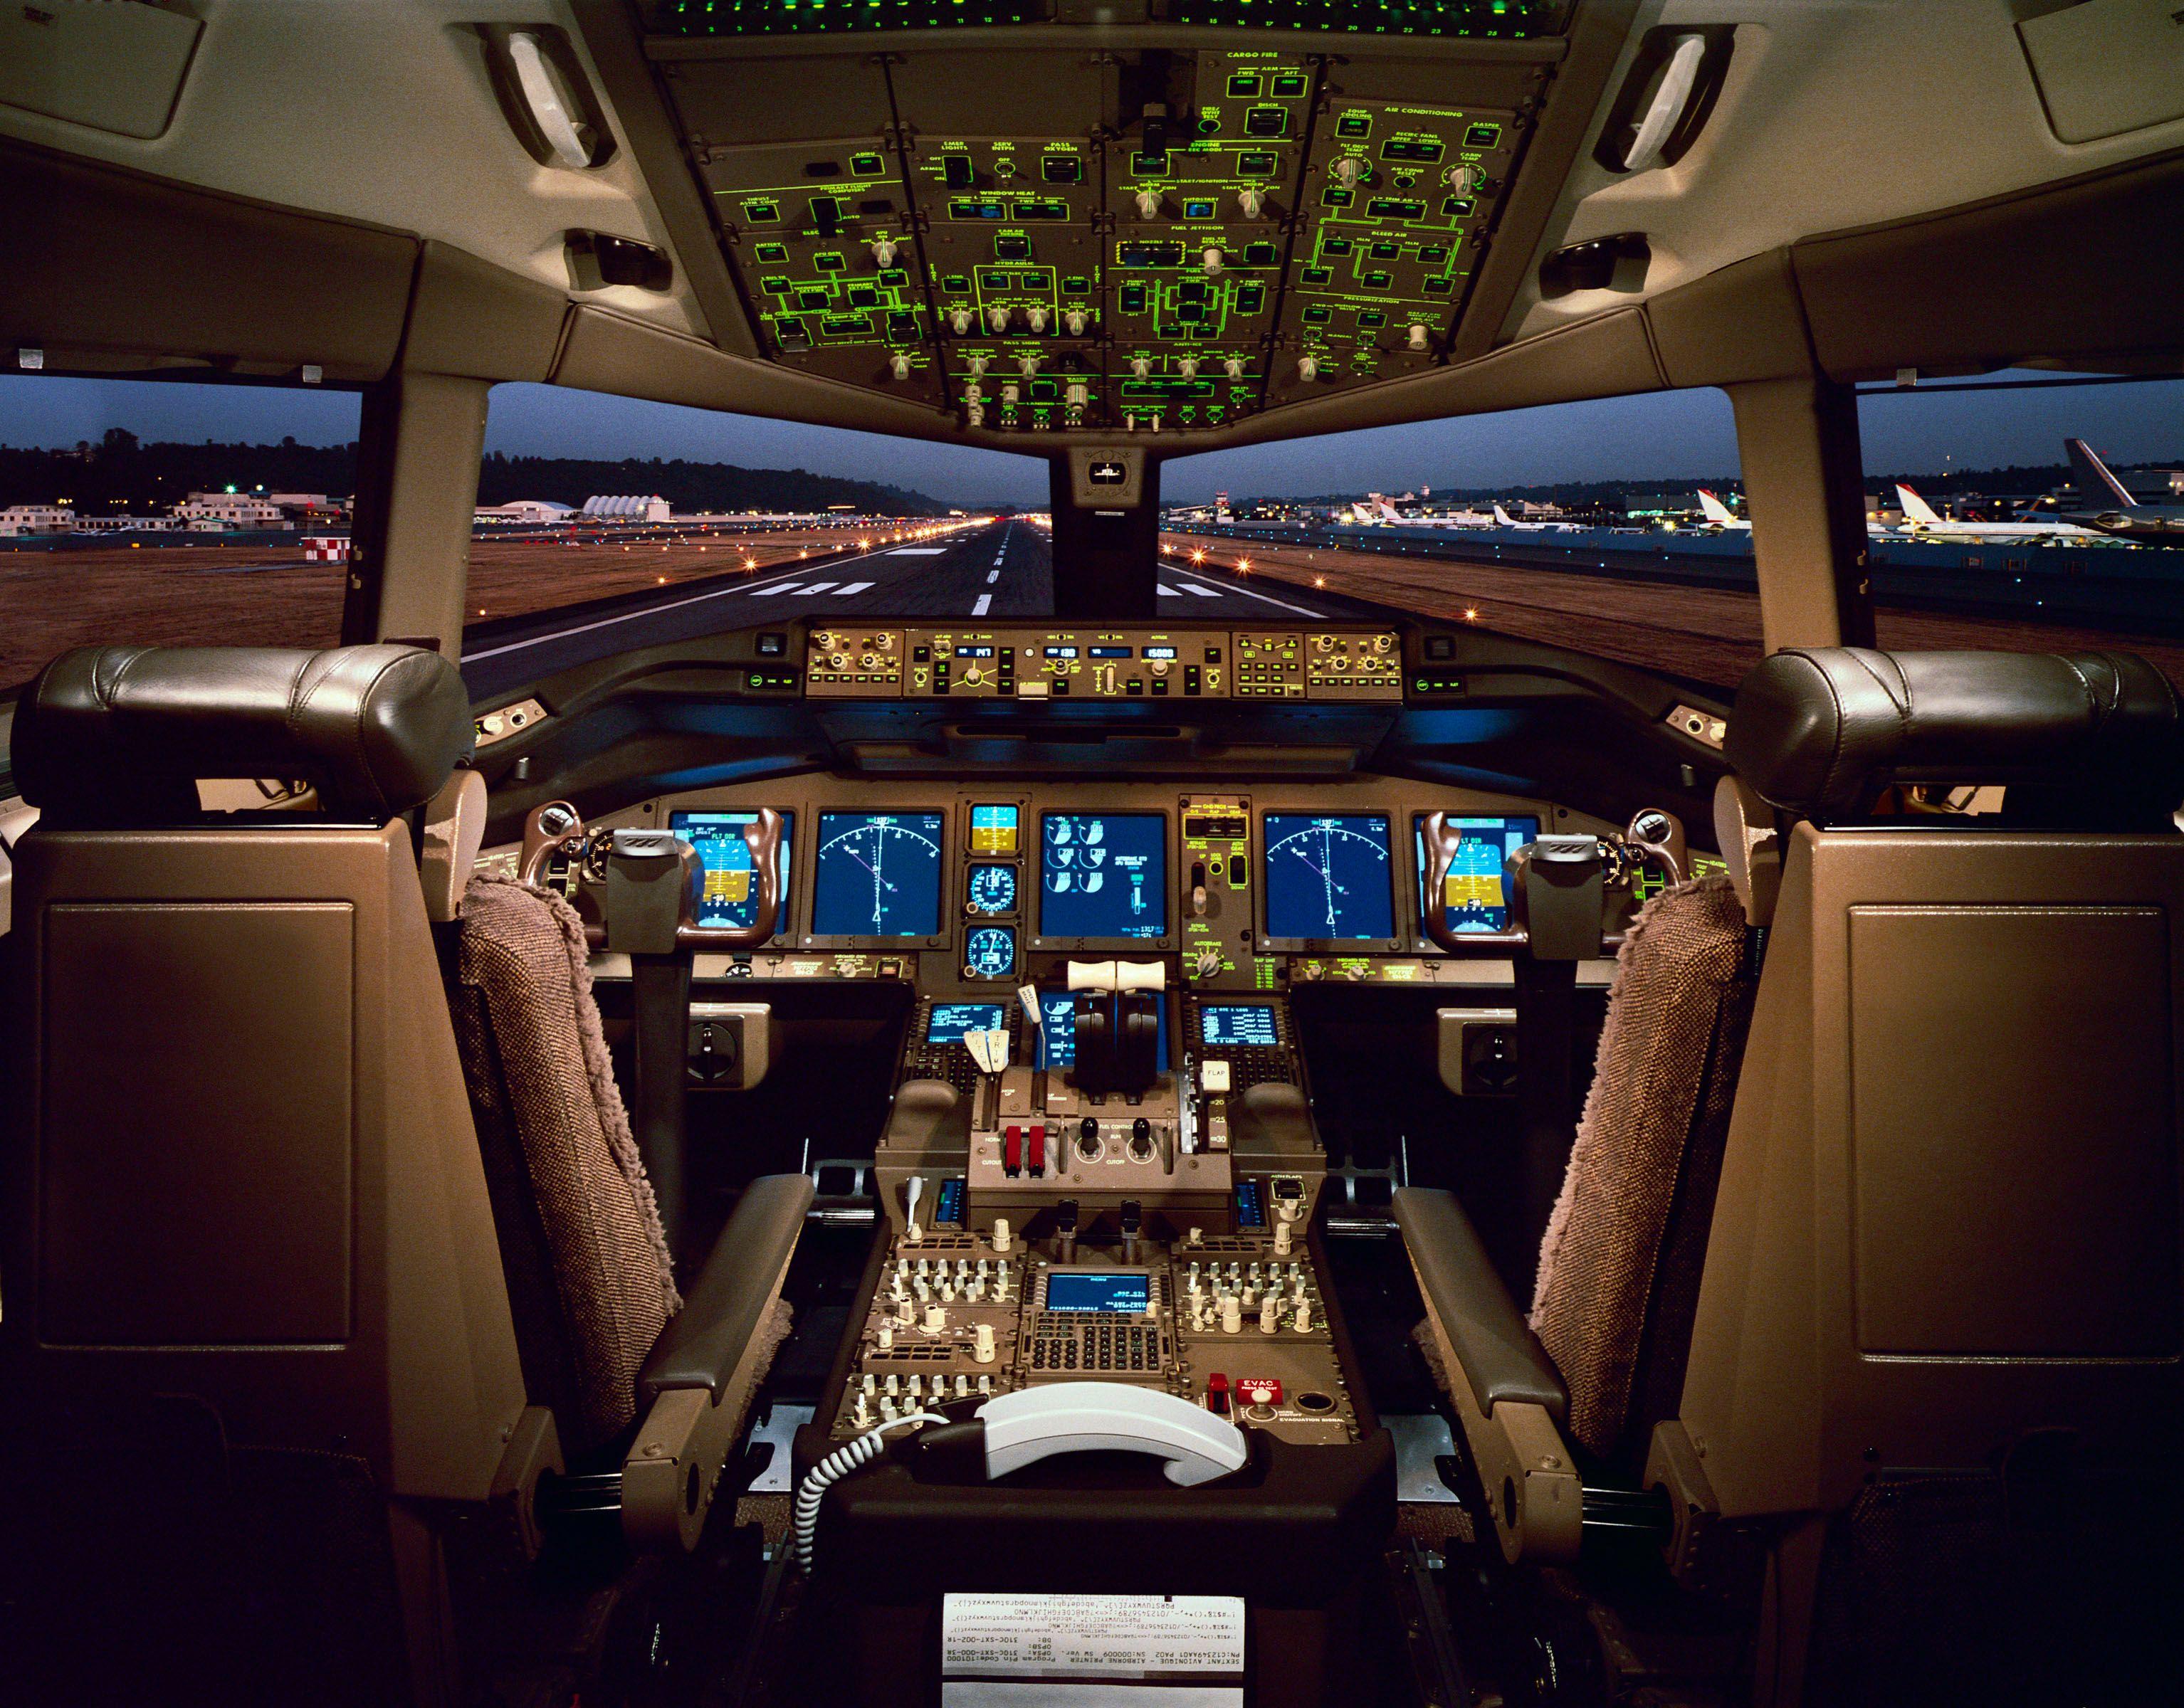 Boeing 777 cabina de mando del avion bimotor de mas largo alcance